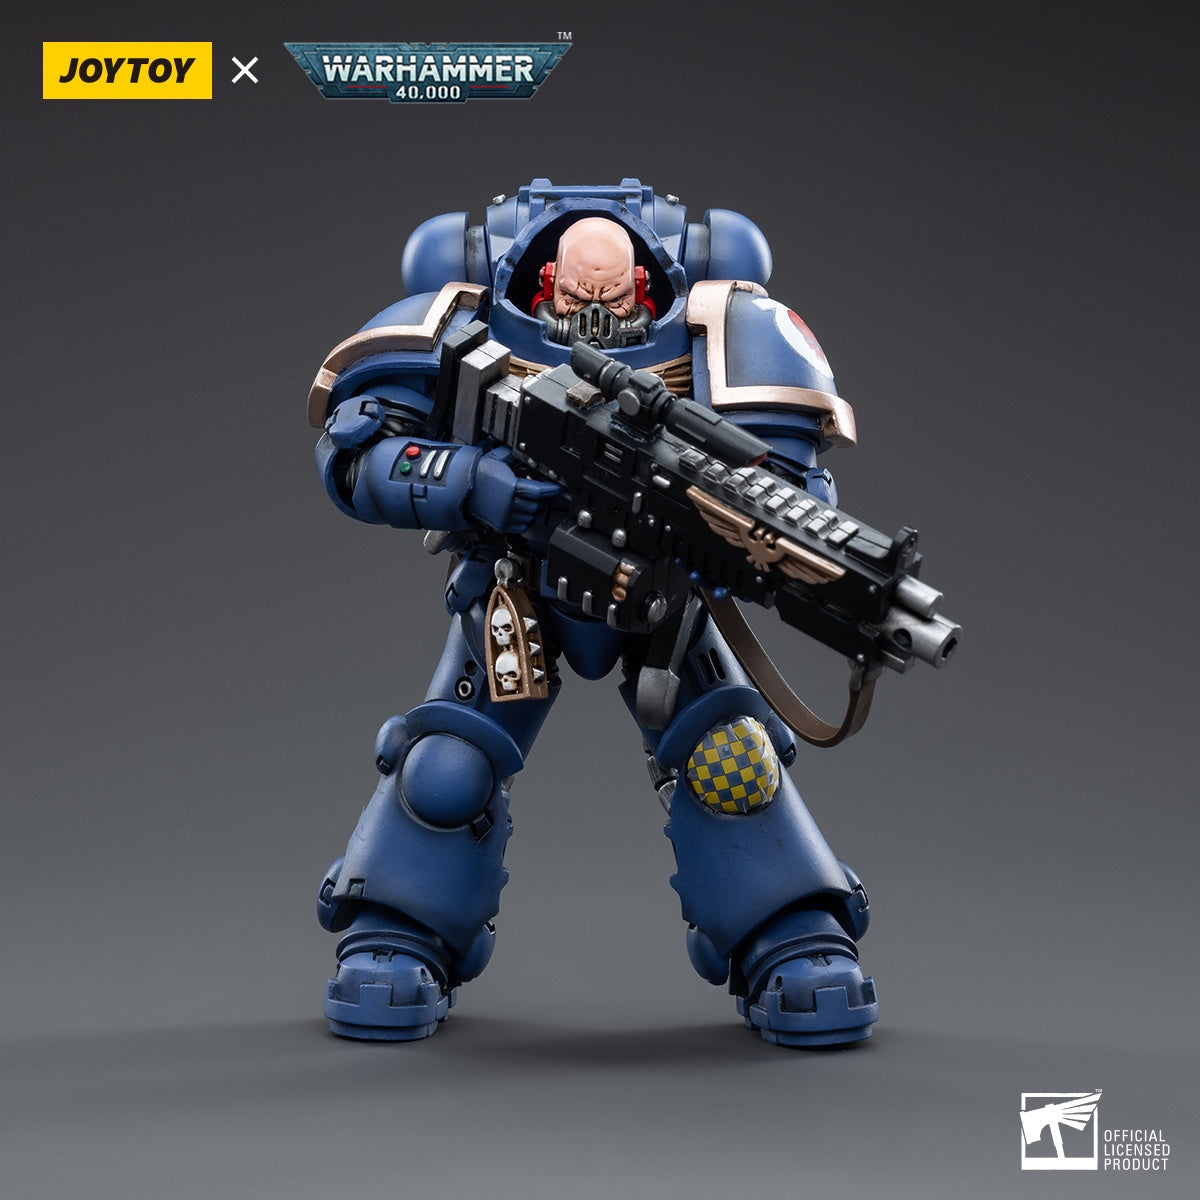 Warhammer Collectibles: 1/18 Scale Ultramarines Heavy Intercessor Sergeant Aetus Gardane